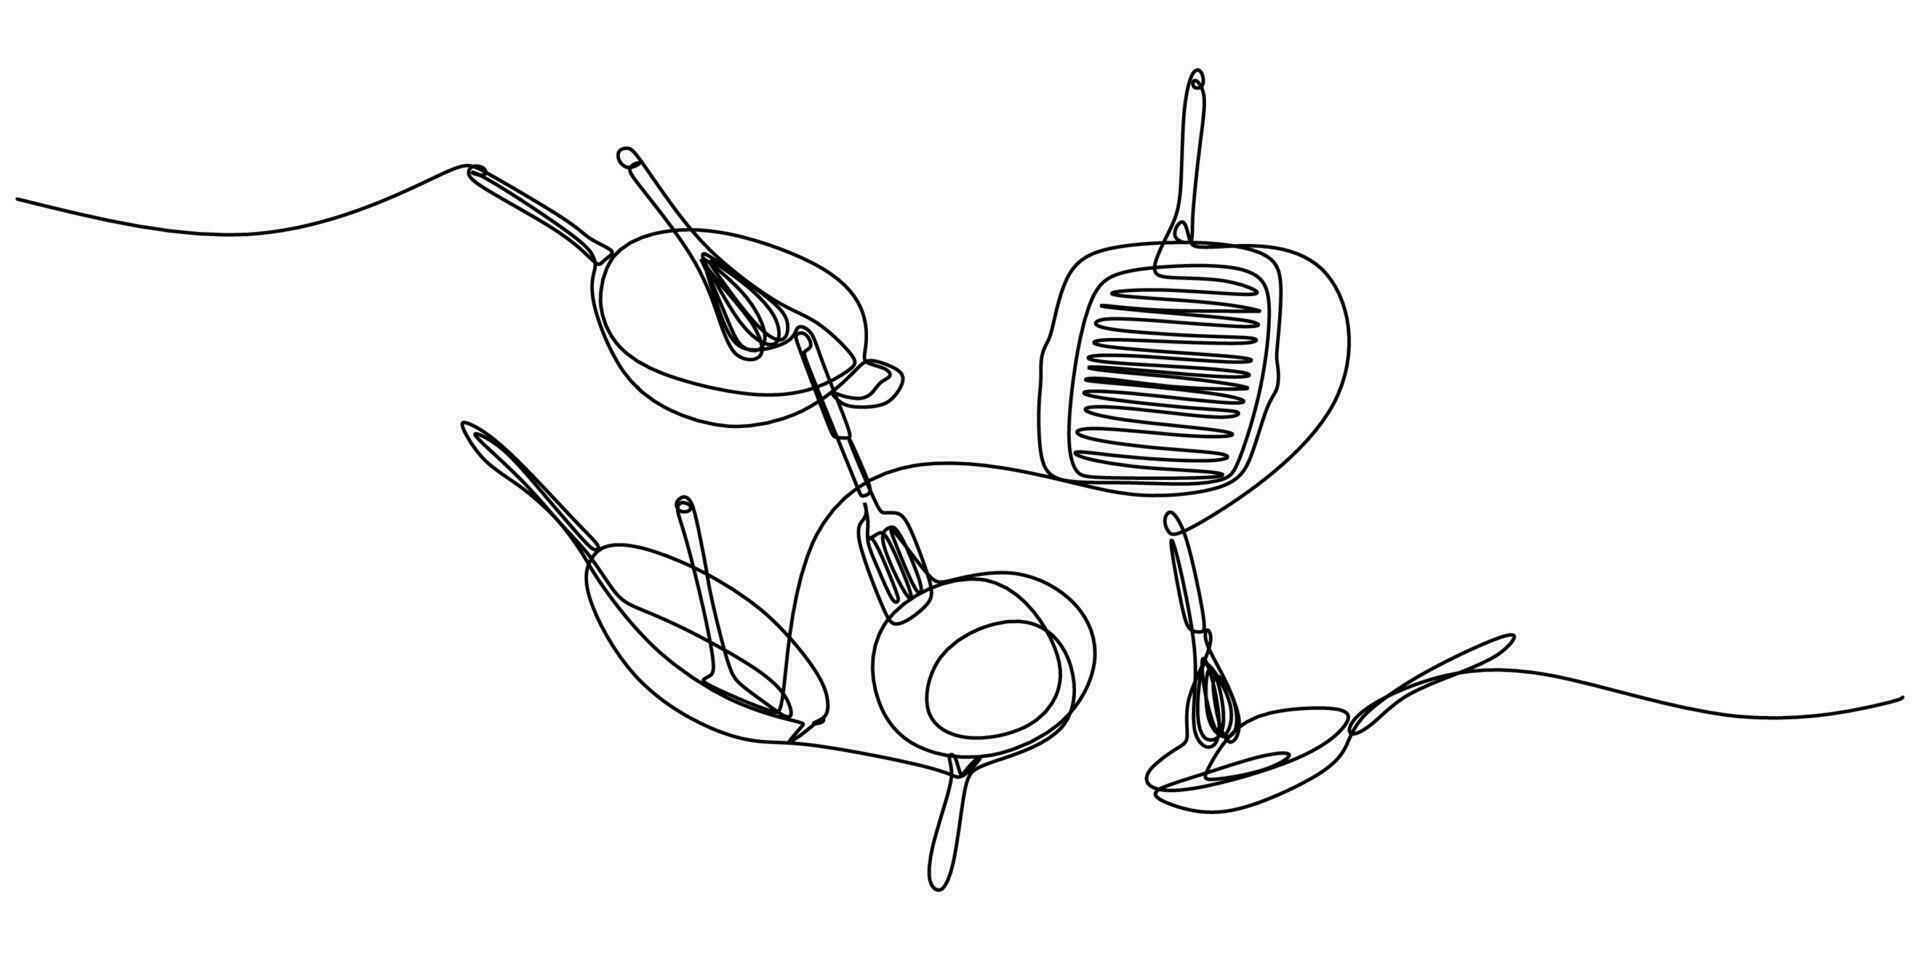 kontinuierlich Single einer Linie von Kochen Utensilien Topf, Messer, Spachtel, Pfanne vektor